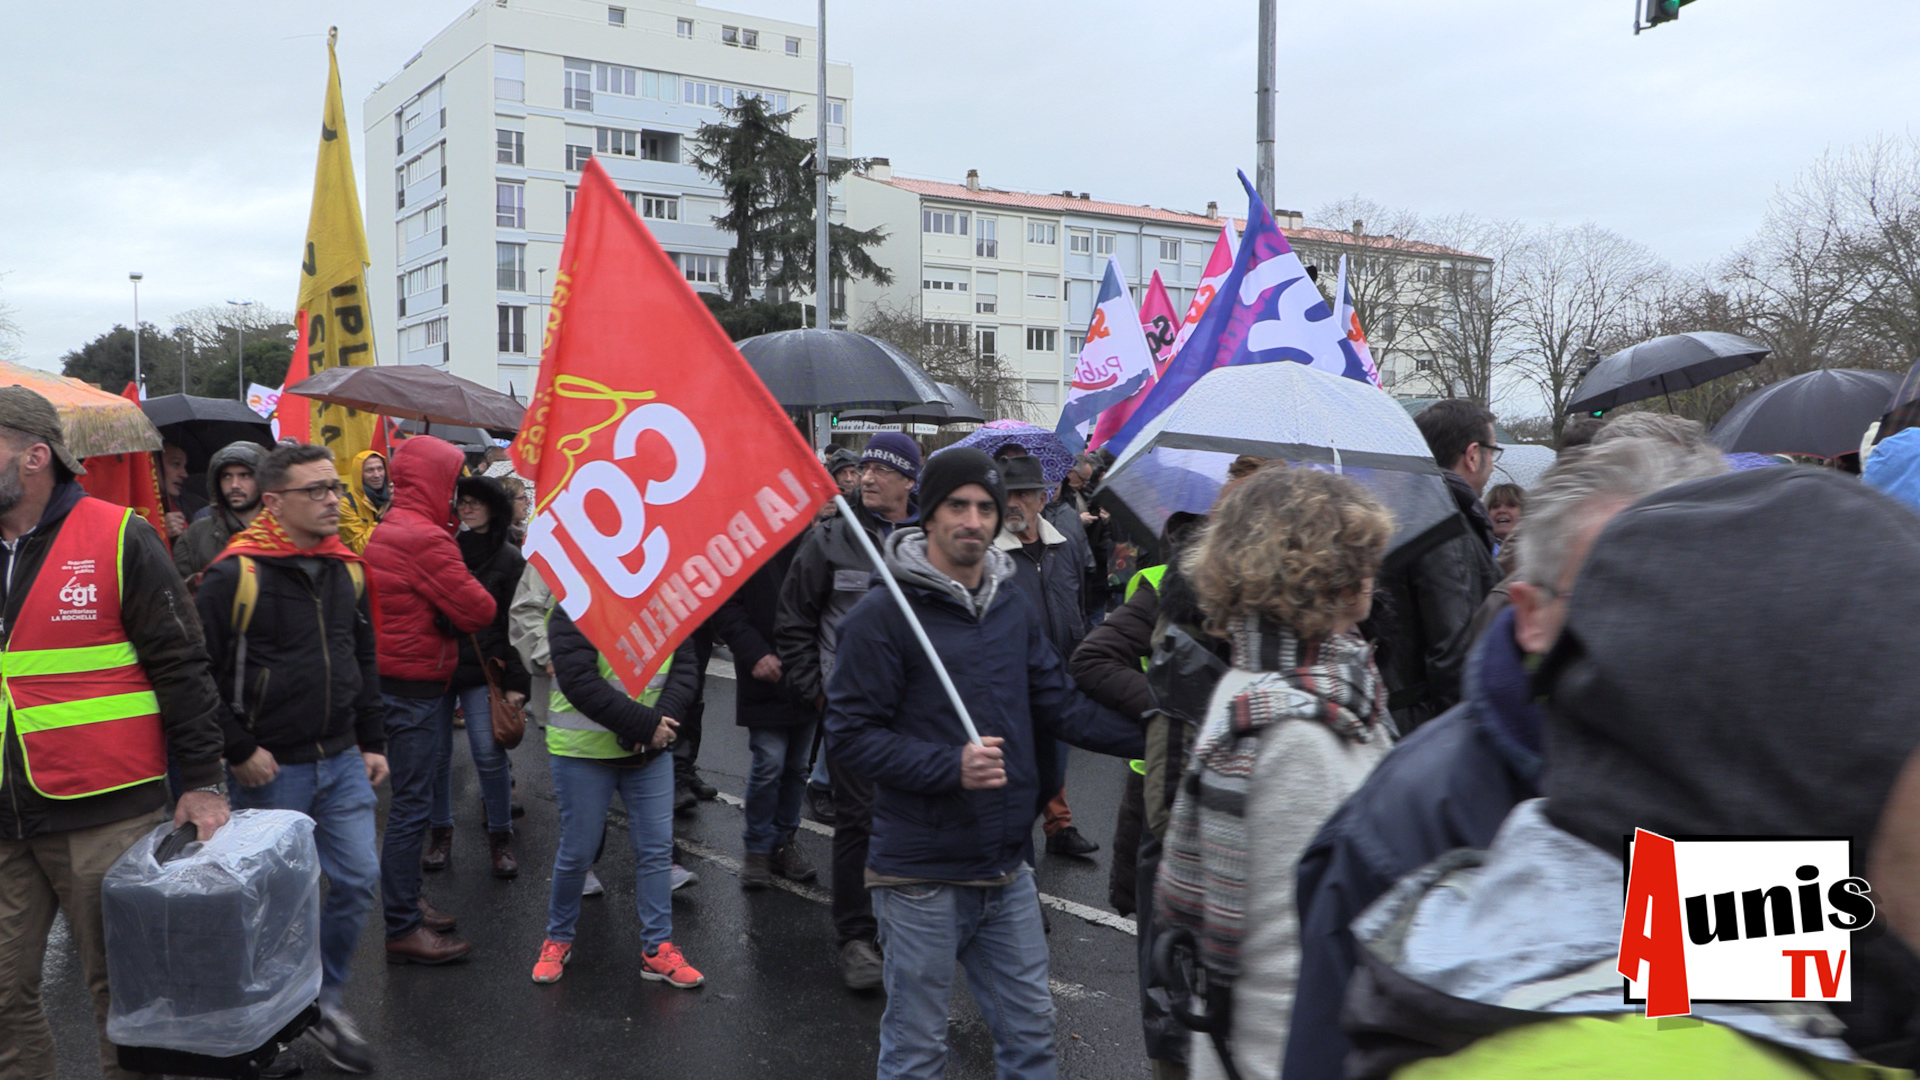 Manifestation réforme retraites La Rochelle mardi 17 décembre 2019